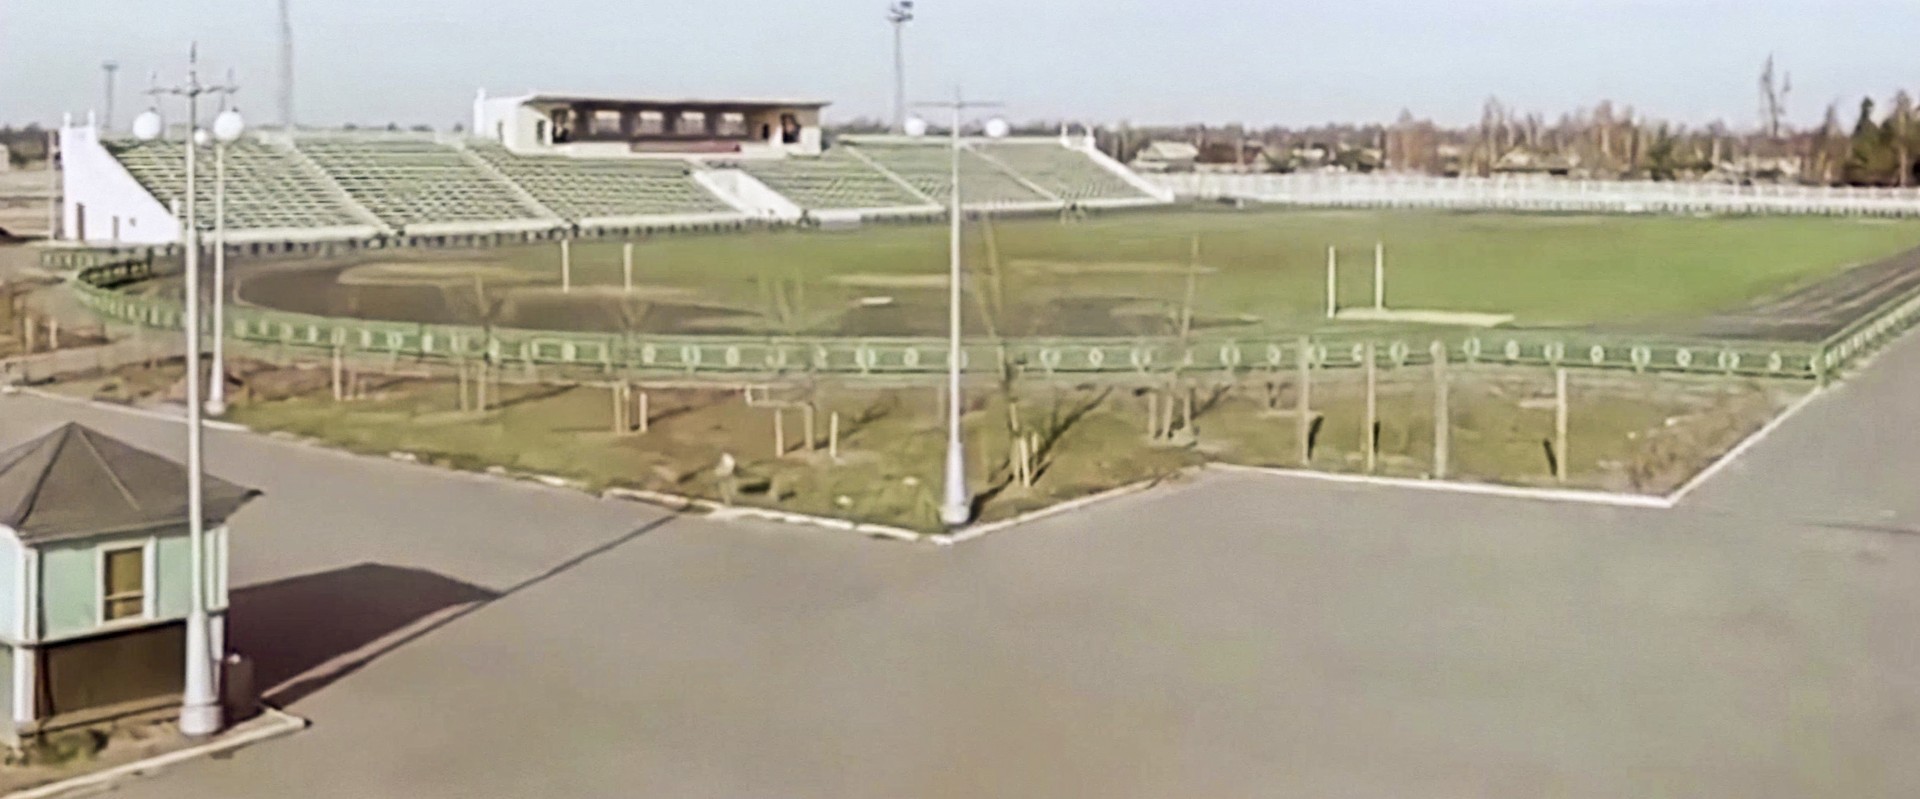 Стадион "Труд", 1960 г.